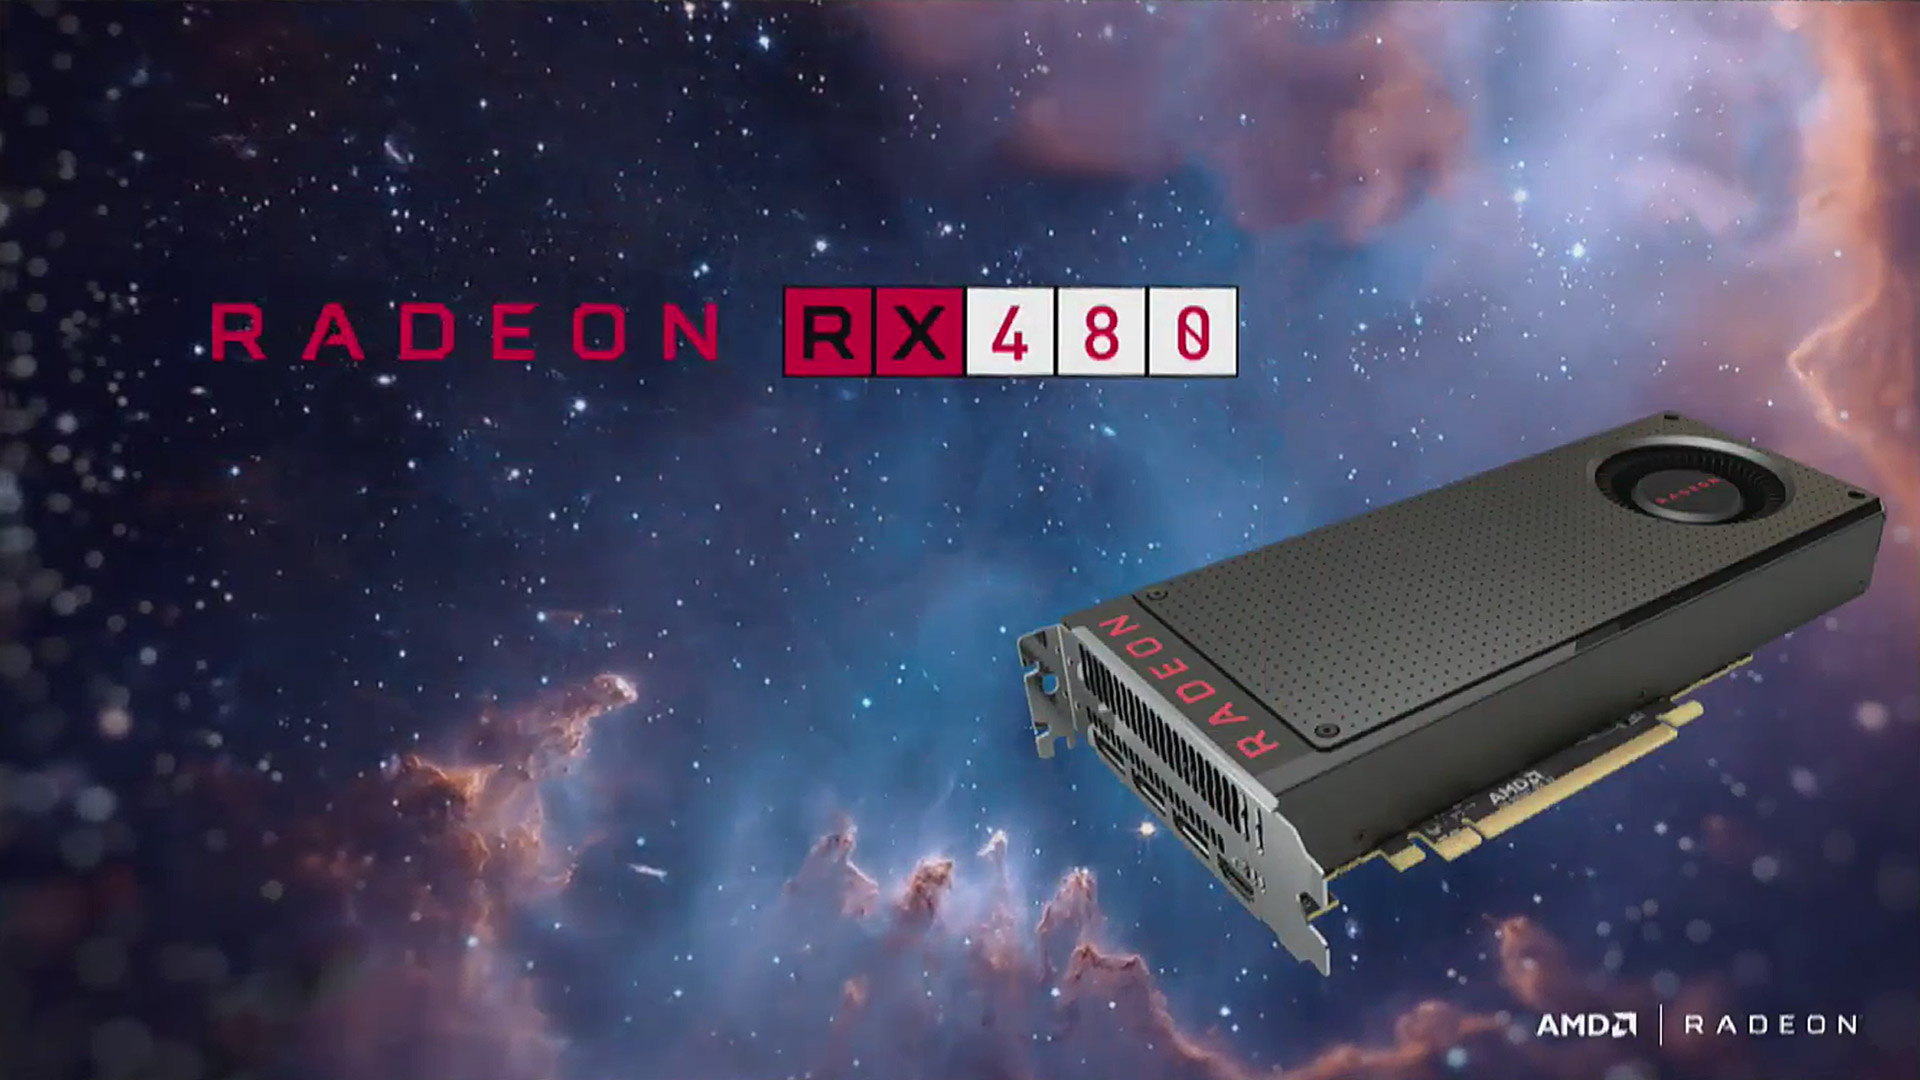 PRESENTANDO LA AMD RX 480